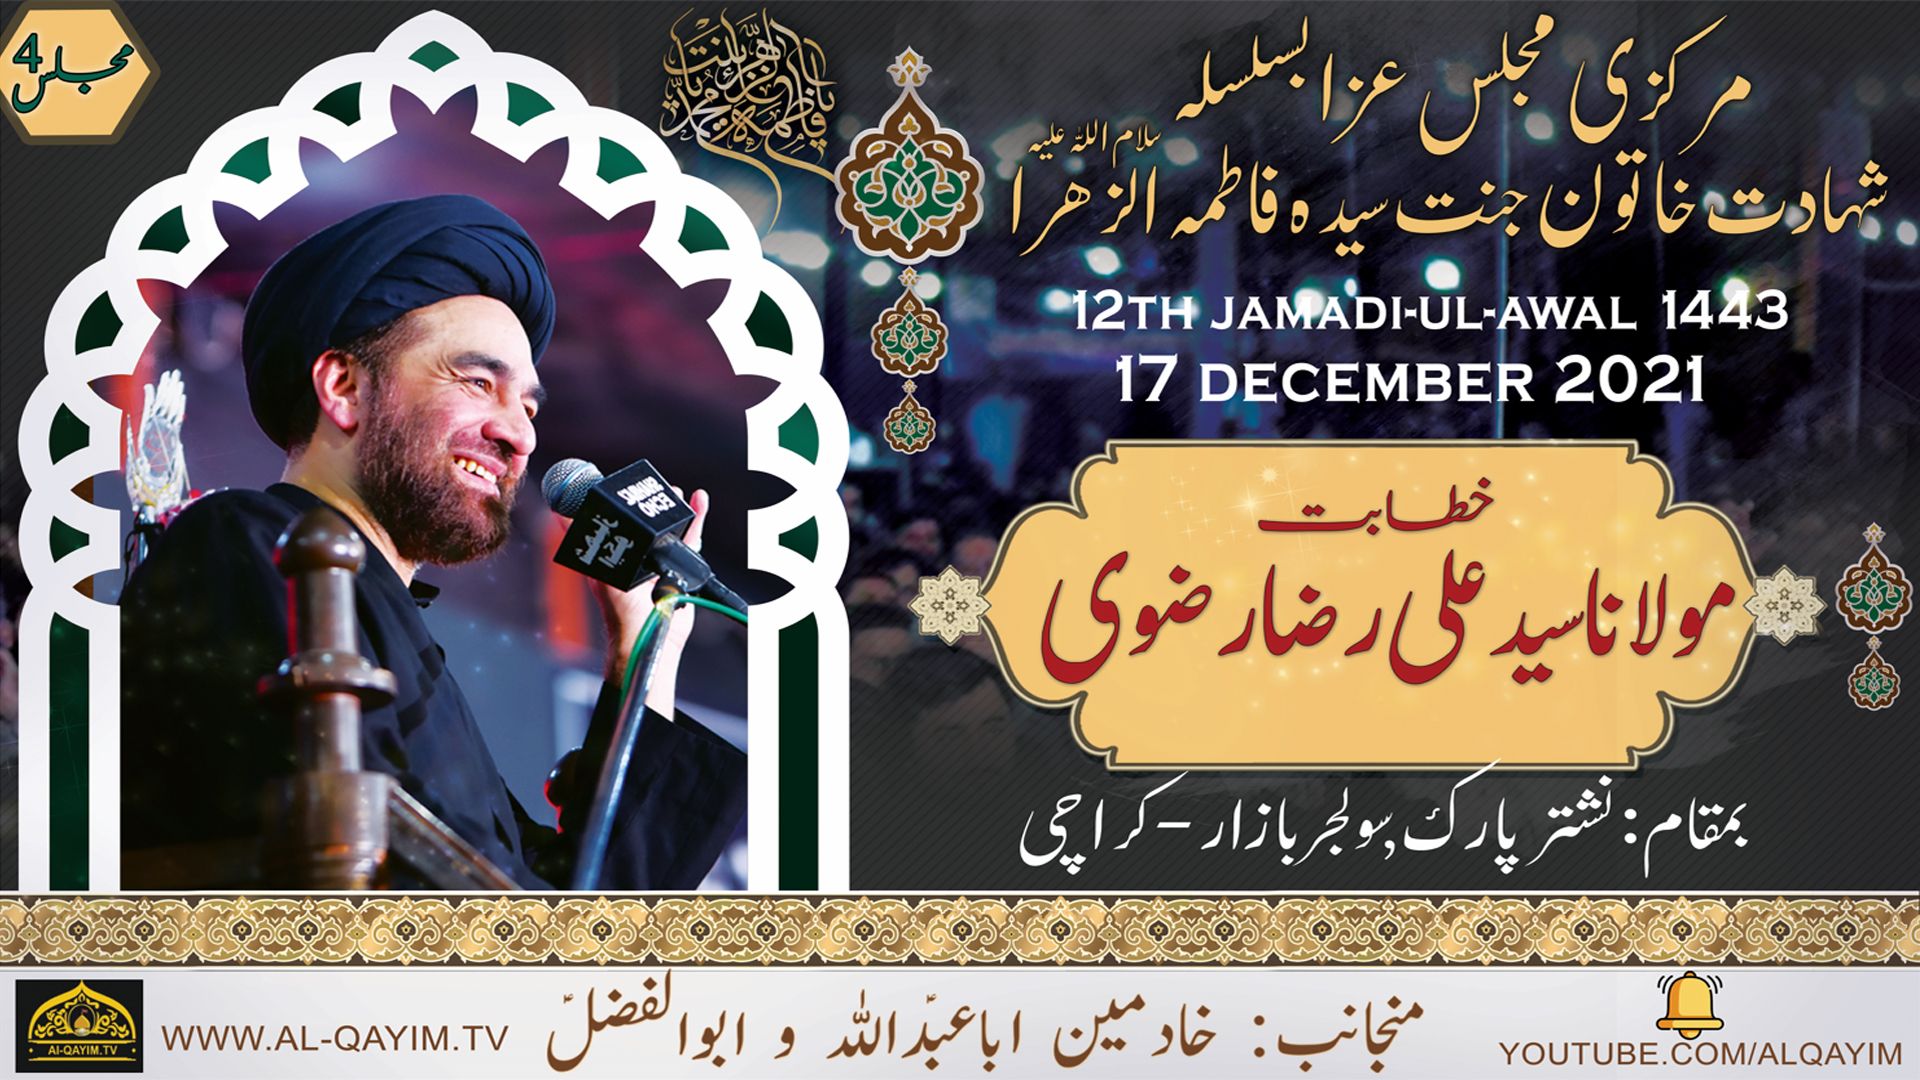 Ayyam-e-Fatima Majlis #4 | Maulana Ali Raza Rizvi | 12 Jamadi Awal 1443/2021 - Nishtar Park, Karachi